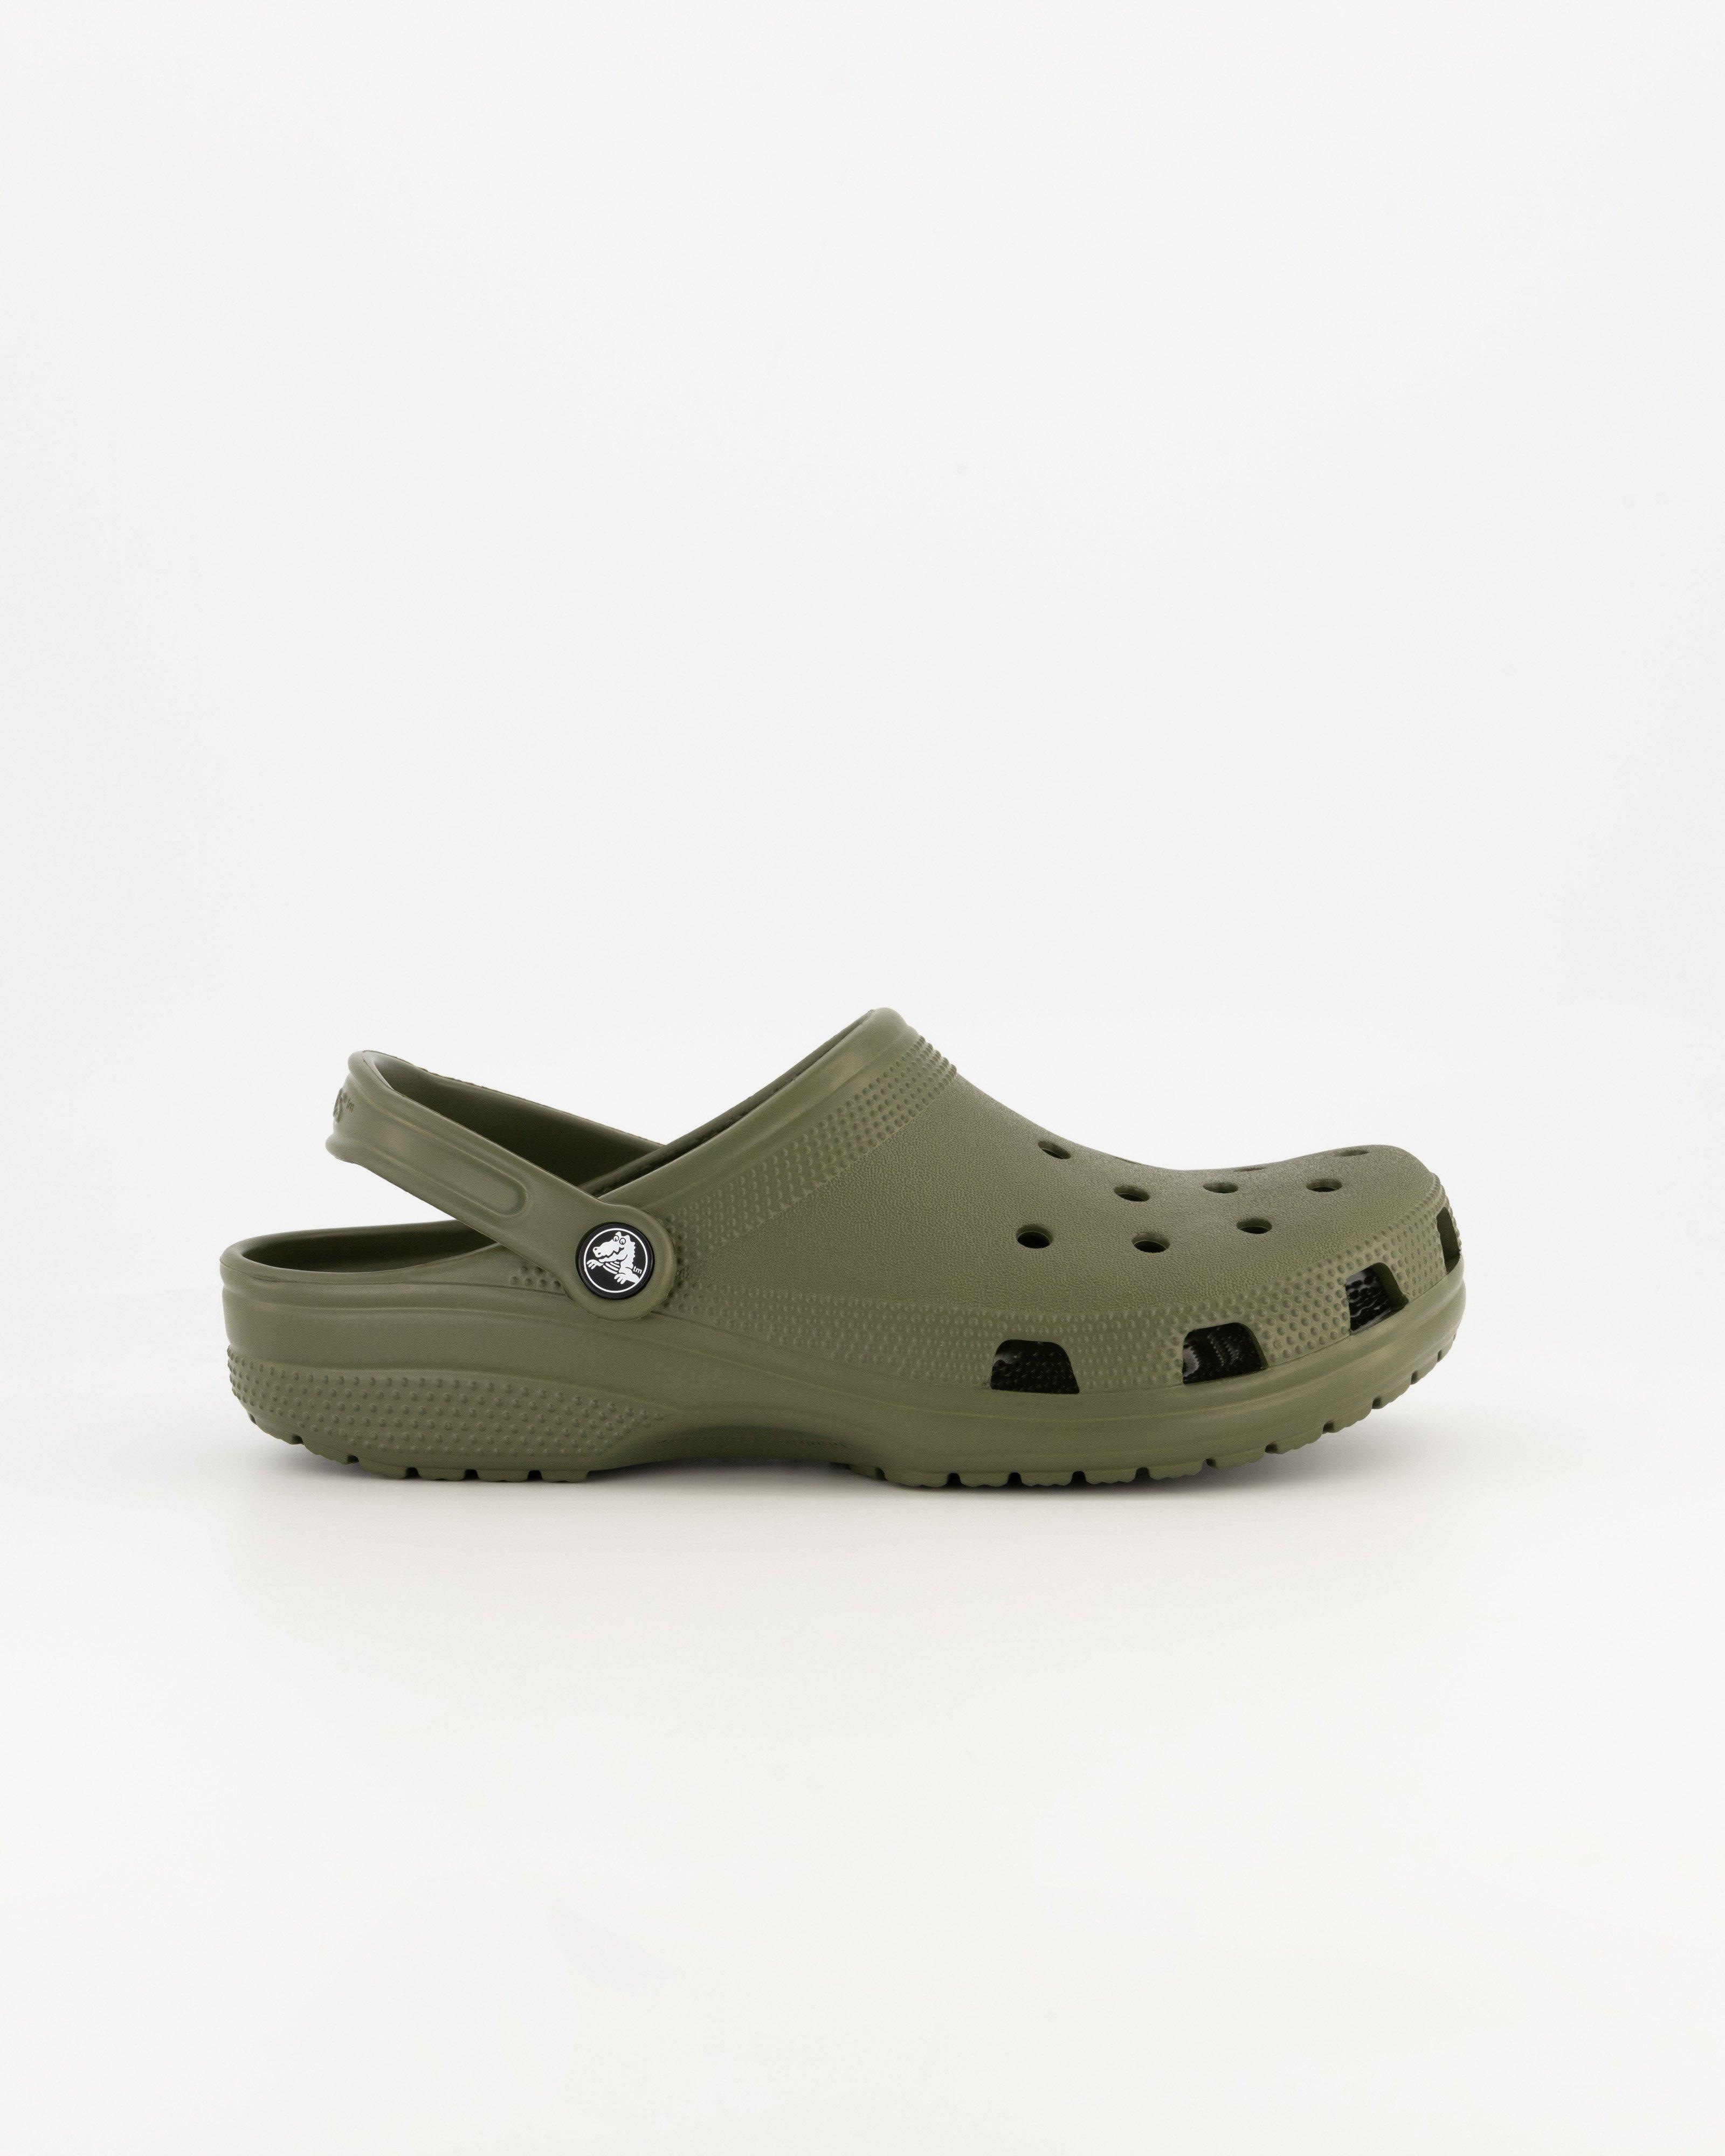 Men's and Women's Crocs Shoes and Sandals For Sale - Cape Union Mart